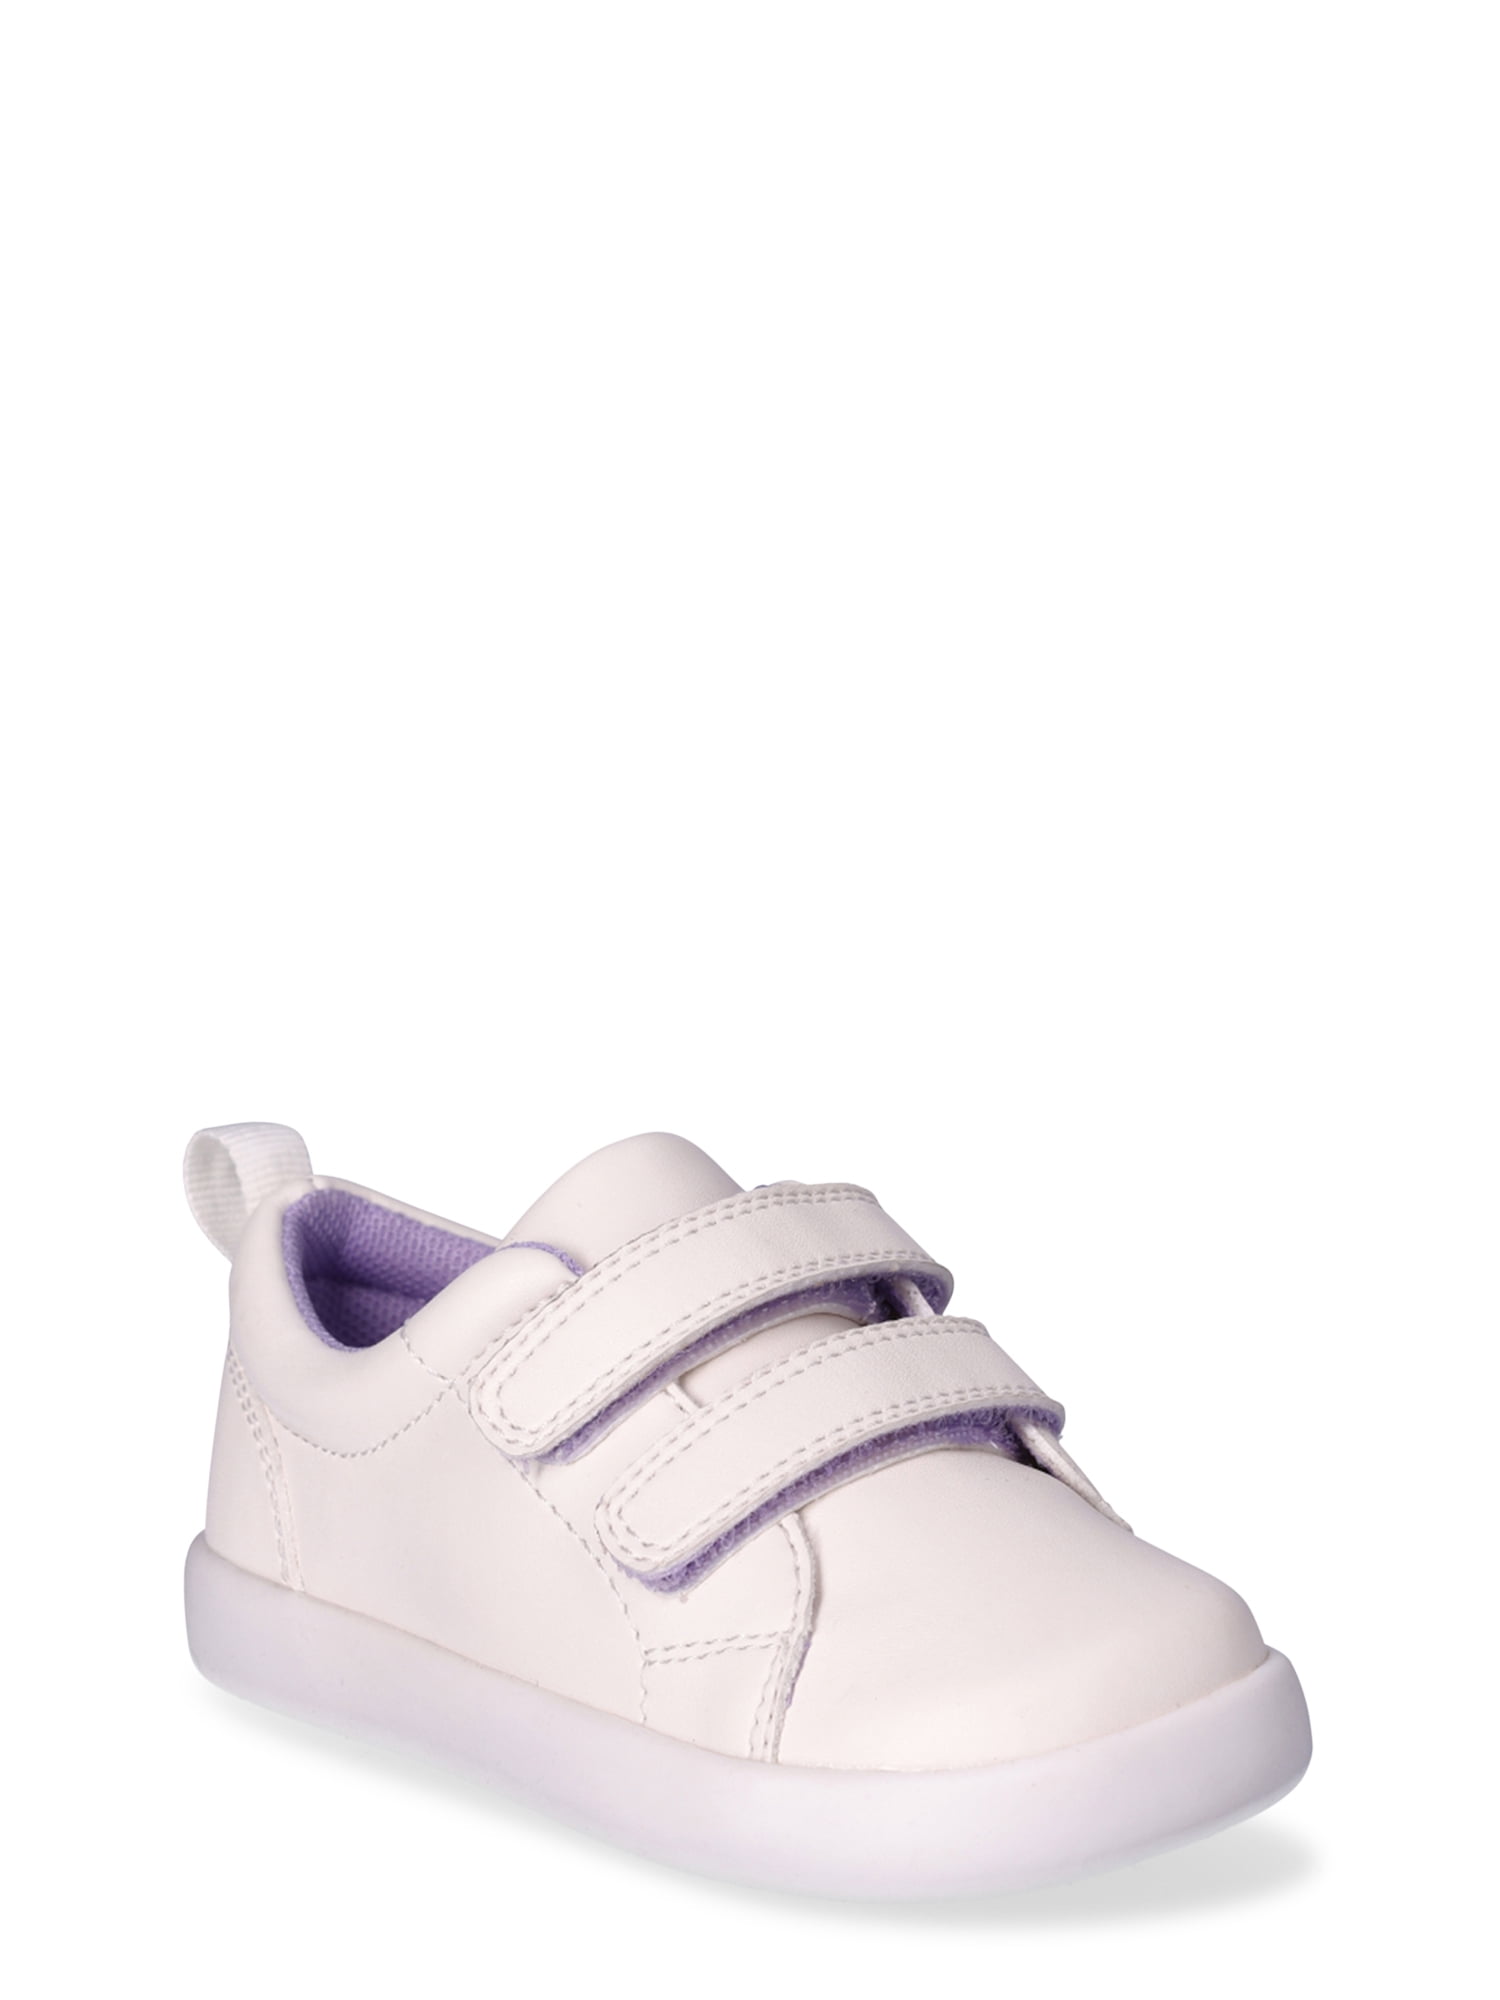 Wonder Nation Unisex Baby Two-Strap Adaptive Shoes, Sizes 2-6 - Walmart.com